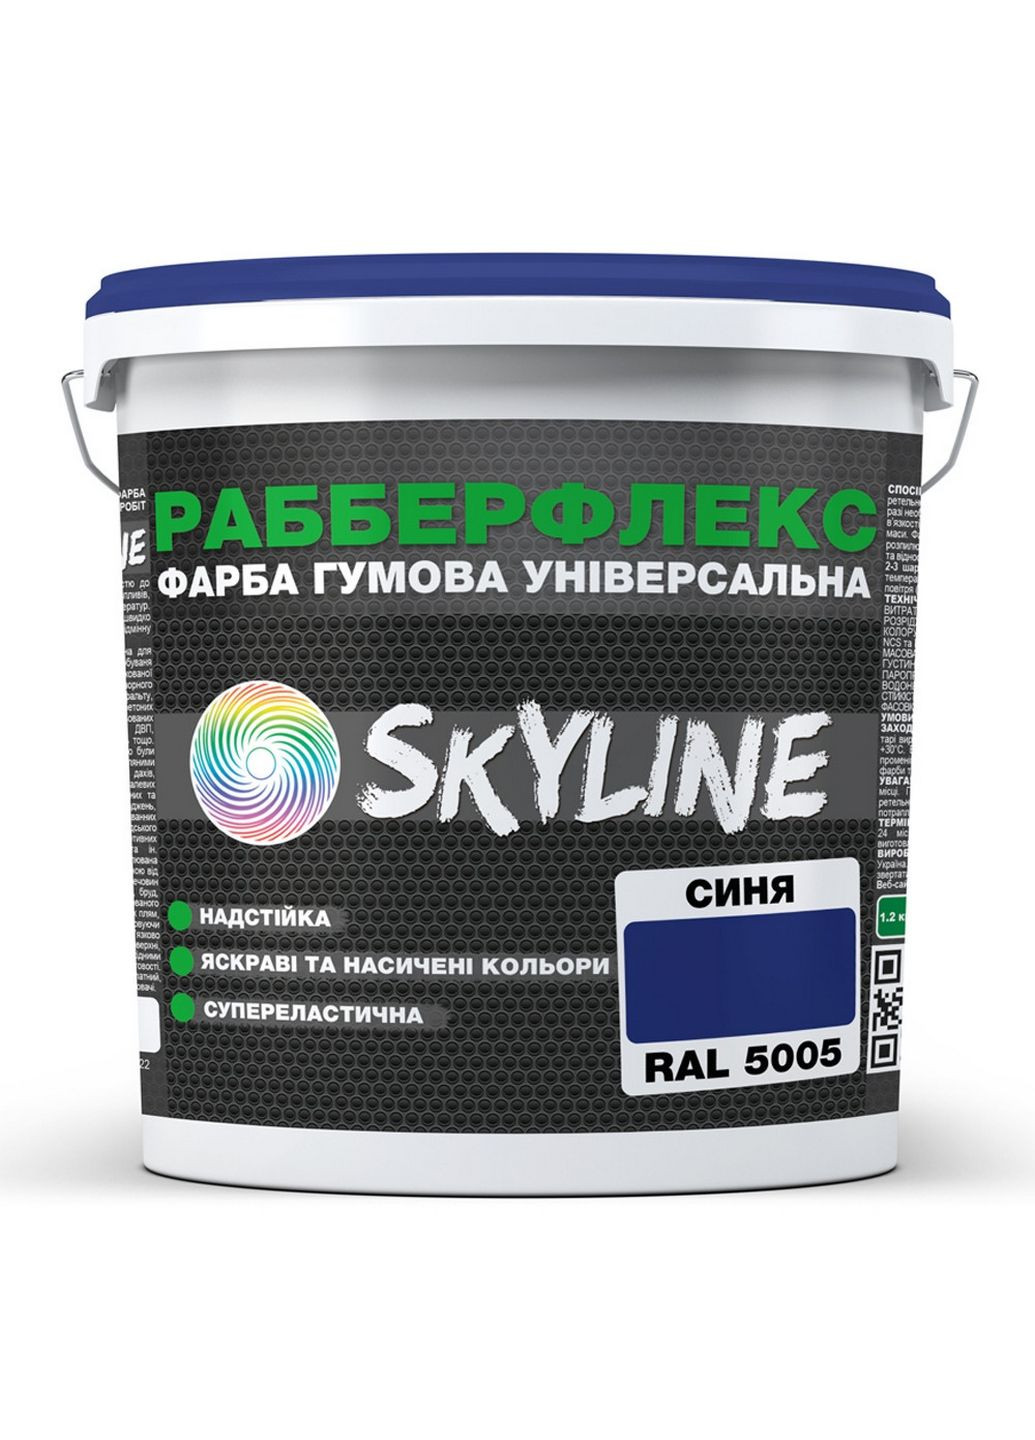 Надстійка фарба гумова супереластична «РабберФлекс» 12 кг SkyLine (289364708)